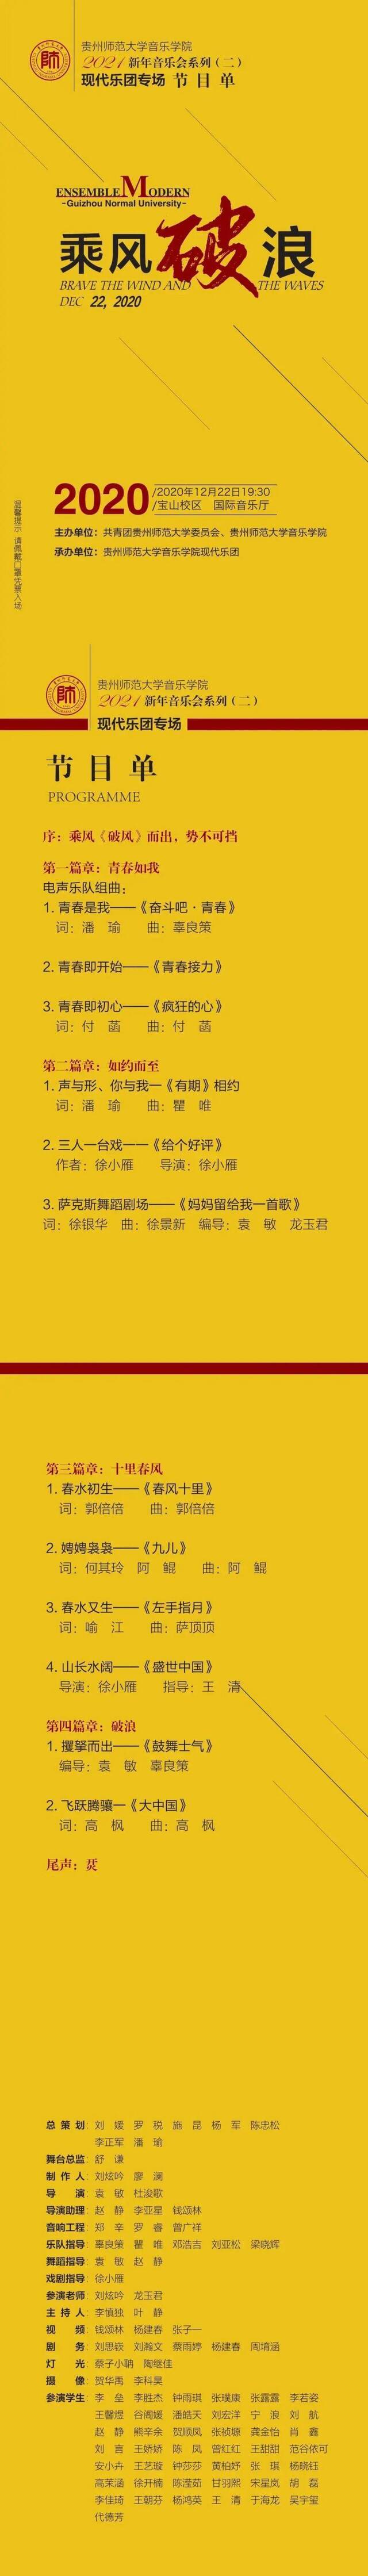 2020年12月22日 贵州师范大学音乐学院2021新年音乐会系列（二) 现代乐团专场